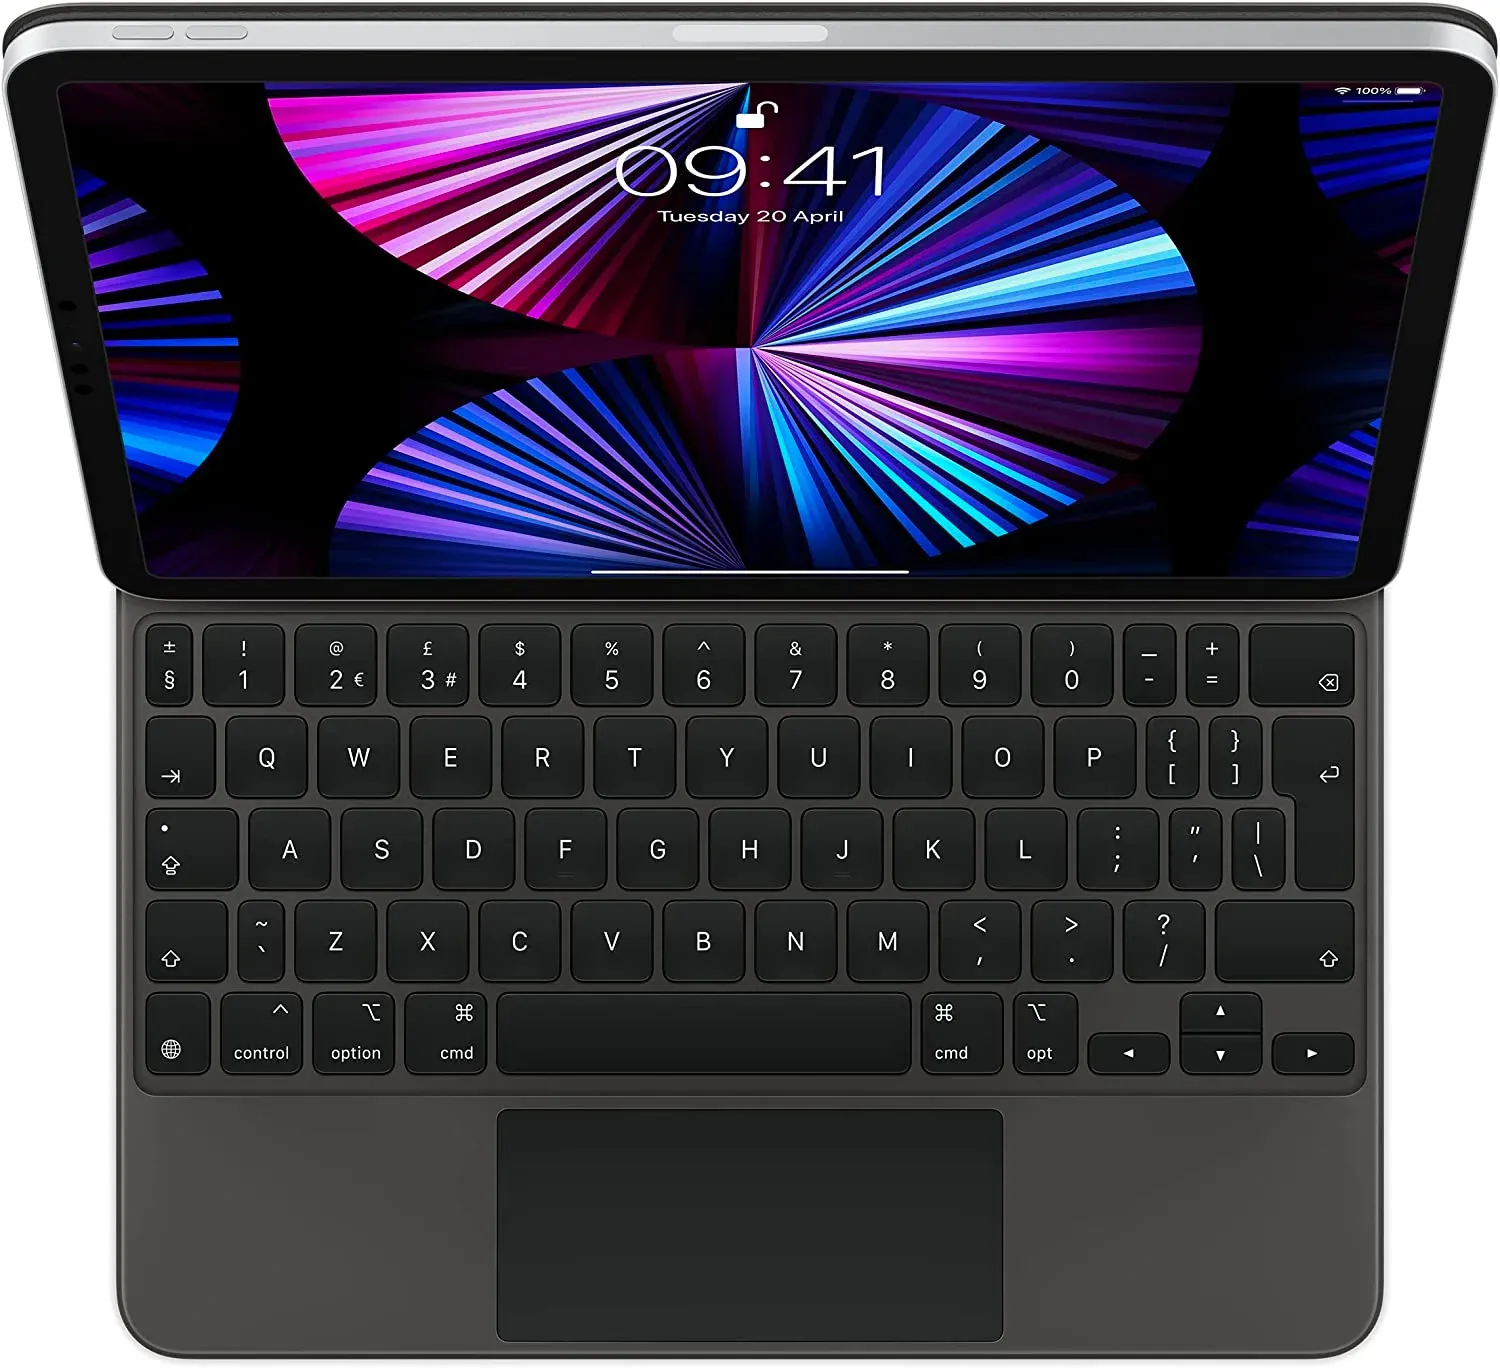 iPad Pro 12.9" with the Apple Magic Keyboard